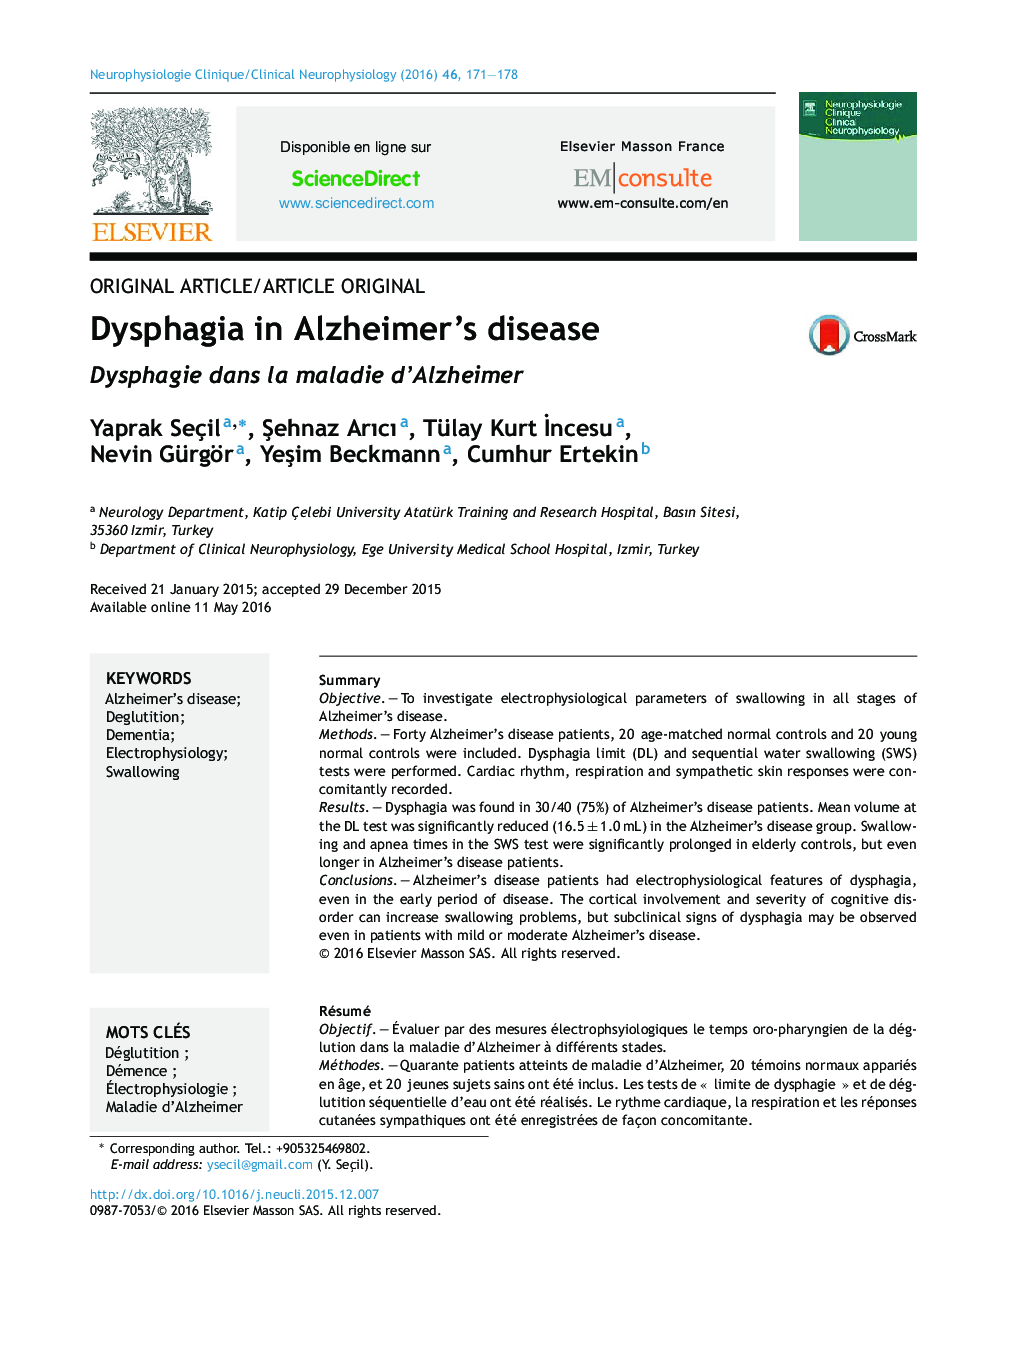 دیسفاژی در بیماری آلزایمر